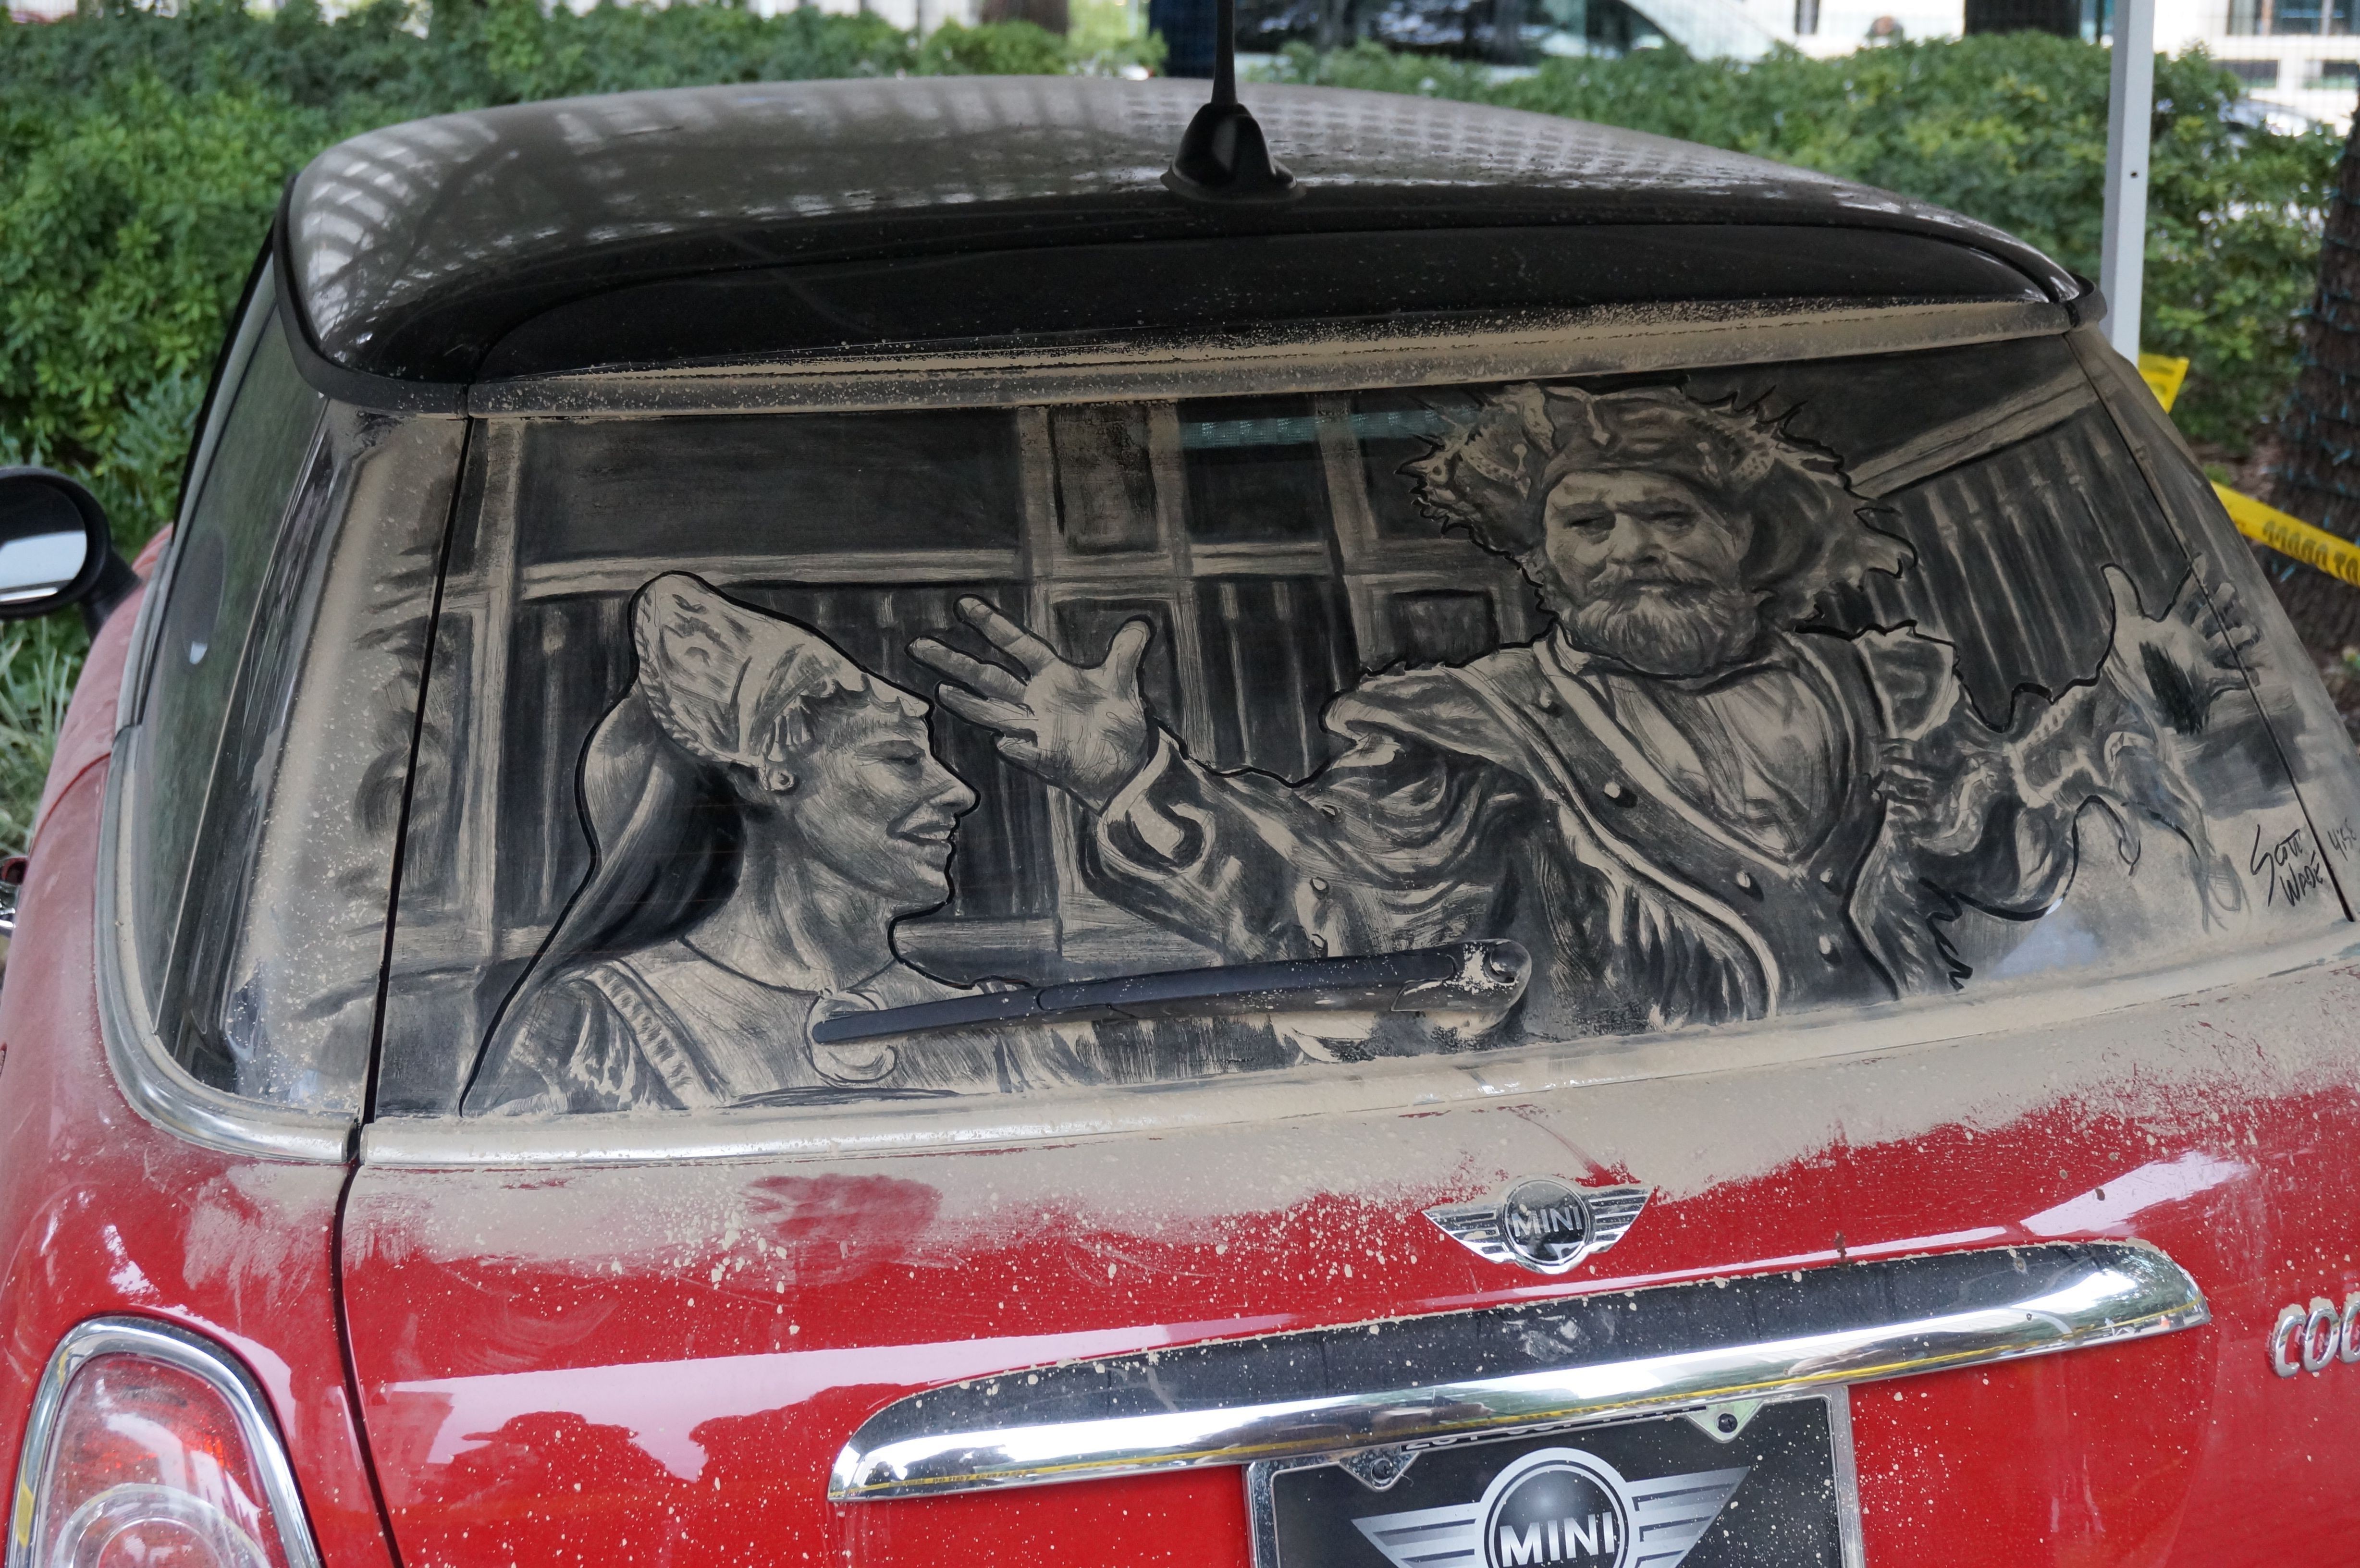 More dirty car art - Via Colori 2013